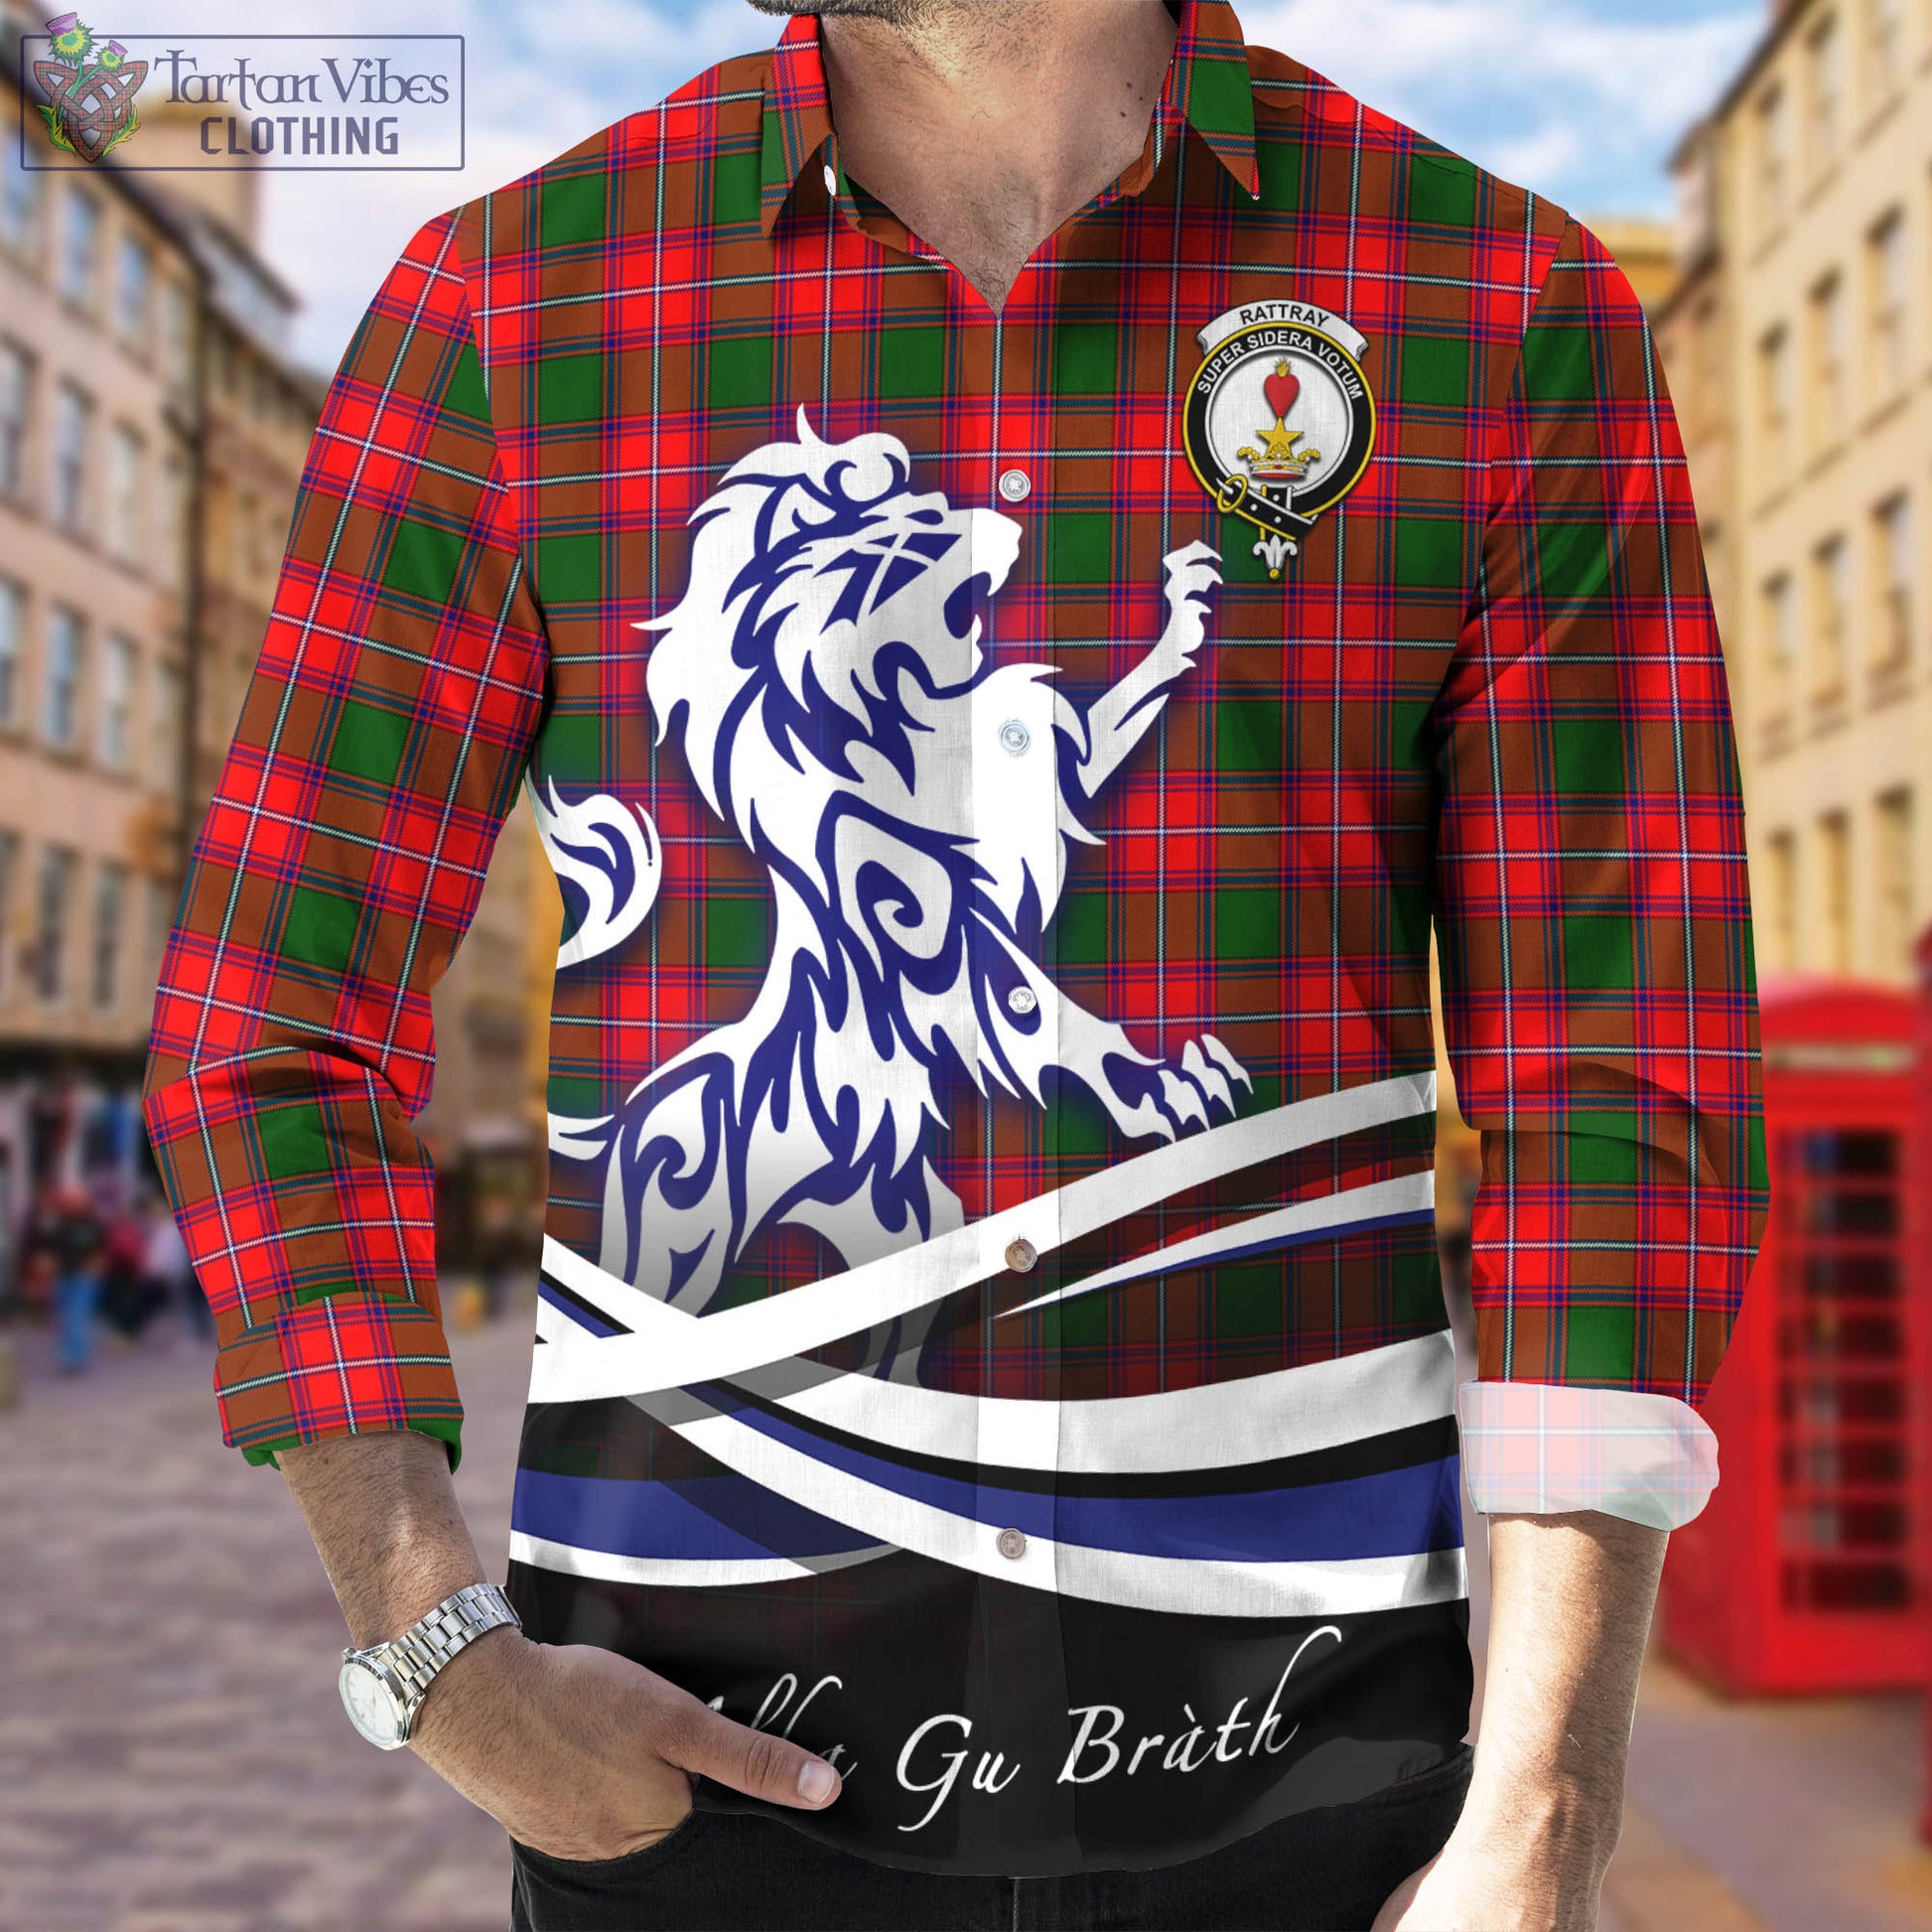 rattray-modern-tartan-long-sleeve-button-up-shirt-with-alba-gu-brath-regal-lion-emblem